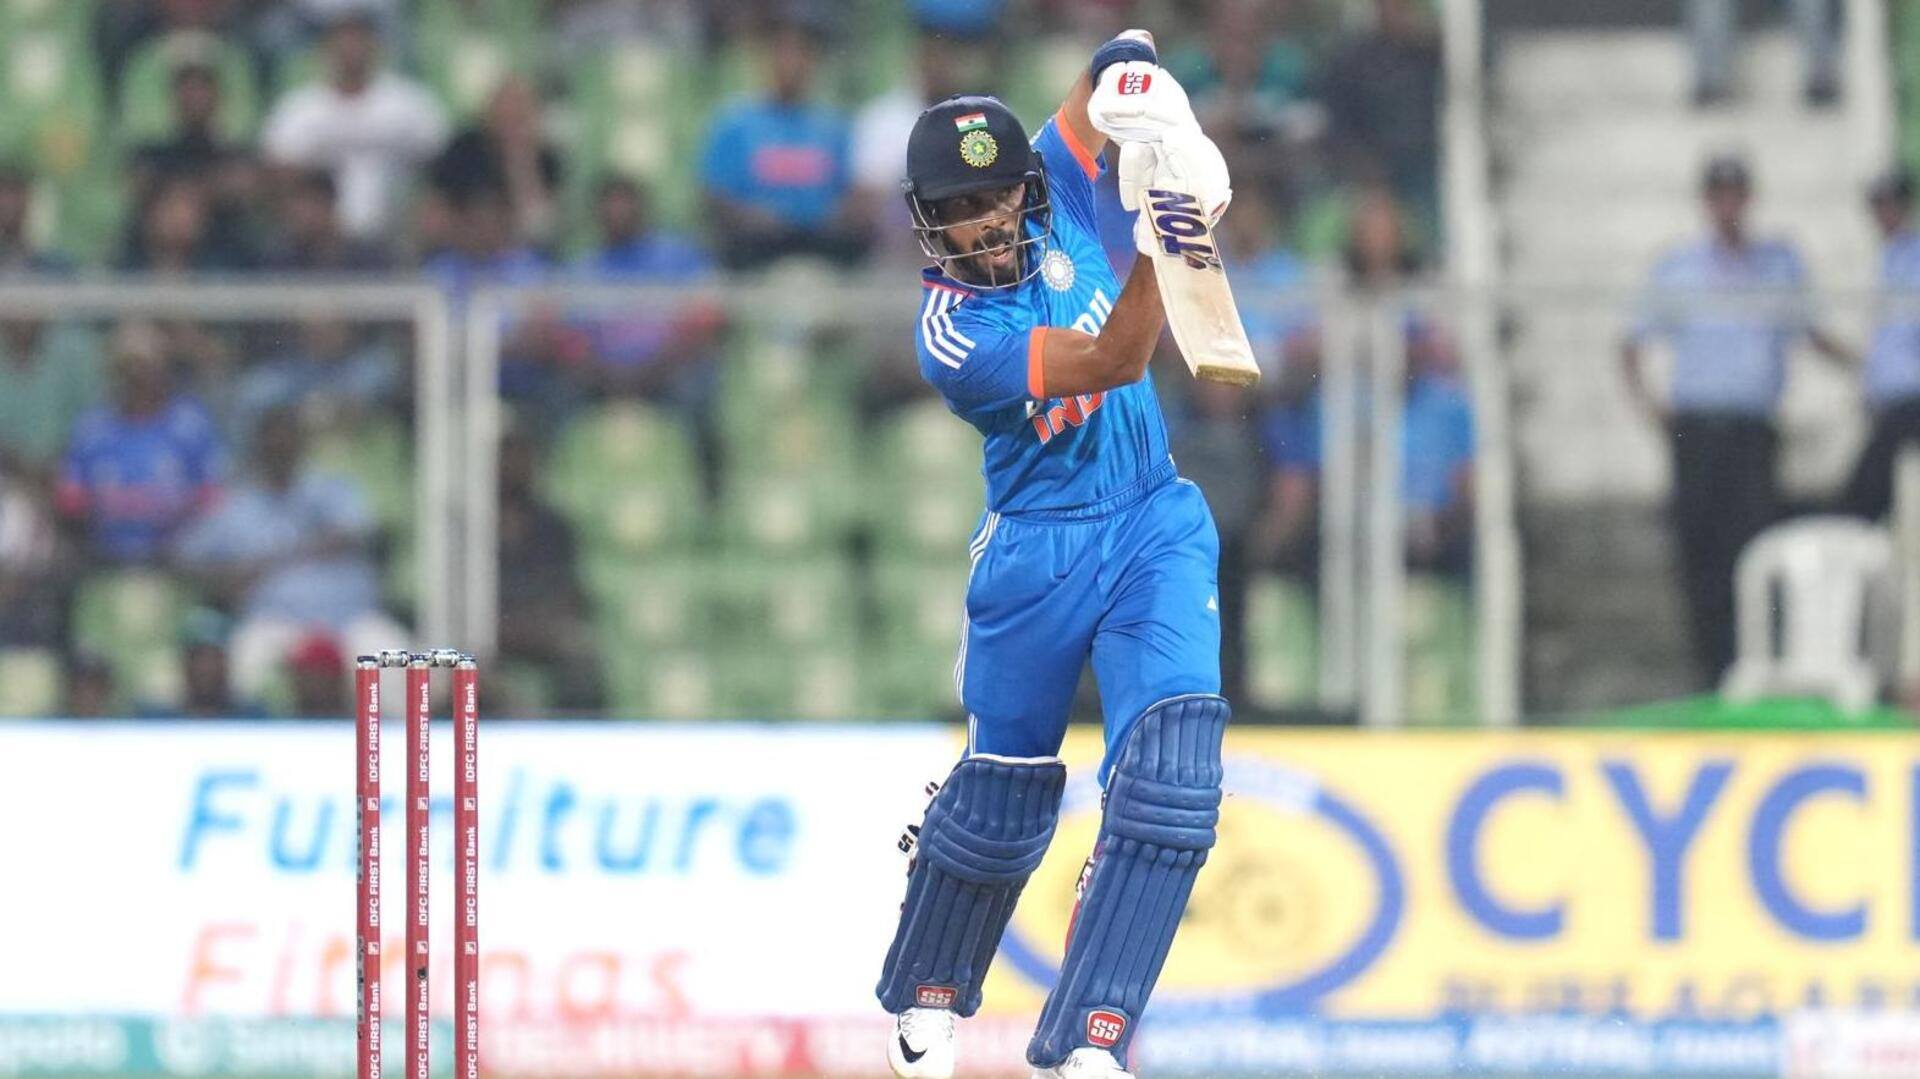 भारत बनाम ऑस्ट्रेलिया: रुतुराज गायकवाड़ ने जड़ा टी-20 करियर का तीसरा अर्धशतक, जानिए उनके आंकड़े